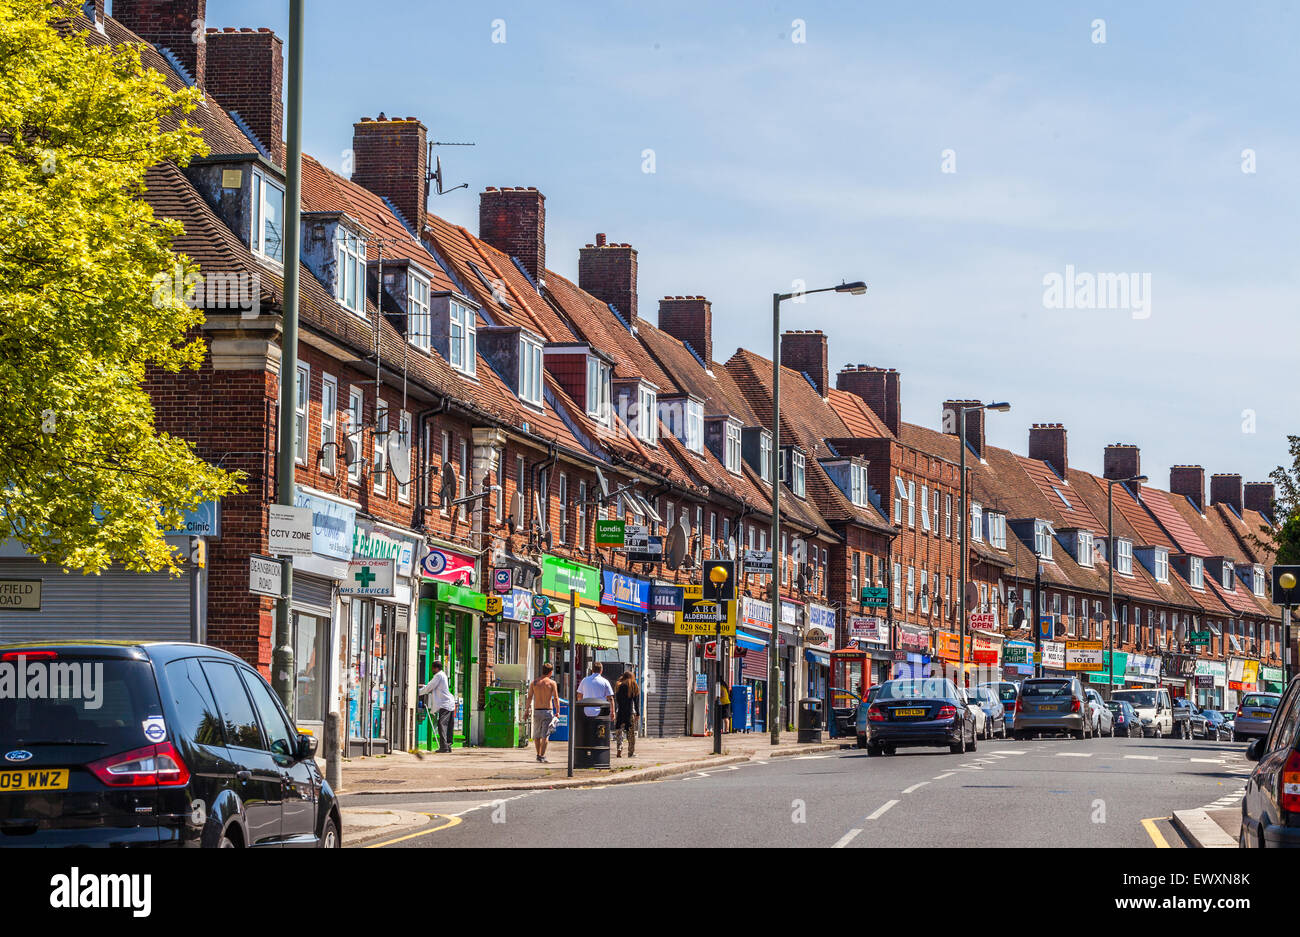 Fila di case a schiera e negozi al piano terra su Deansbrook Road, High Street, Edgware, HA8, Inghilterra, REGNO UNITO. Foto Stock